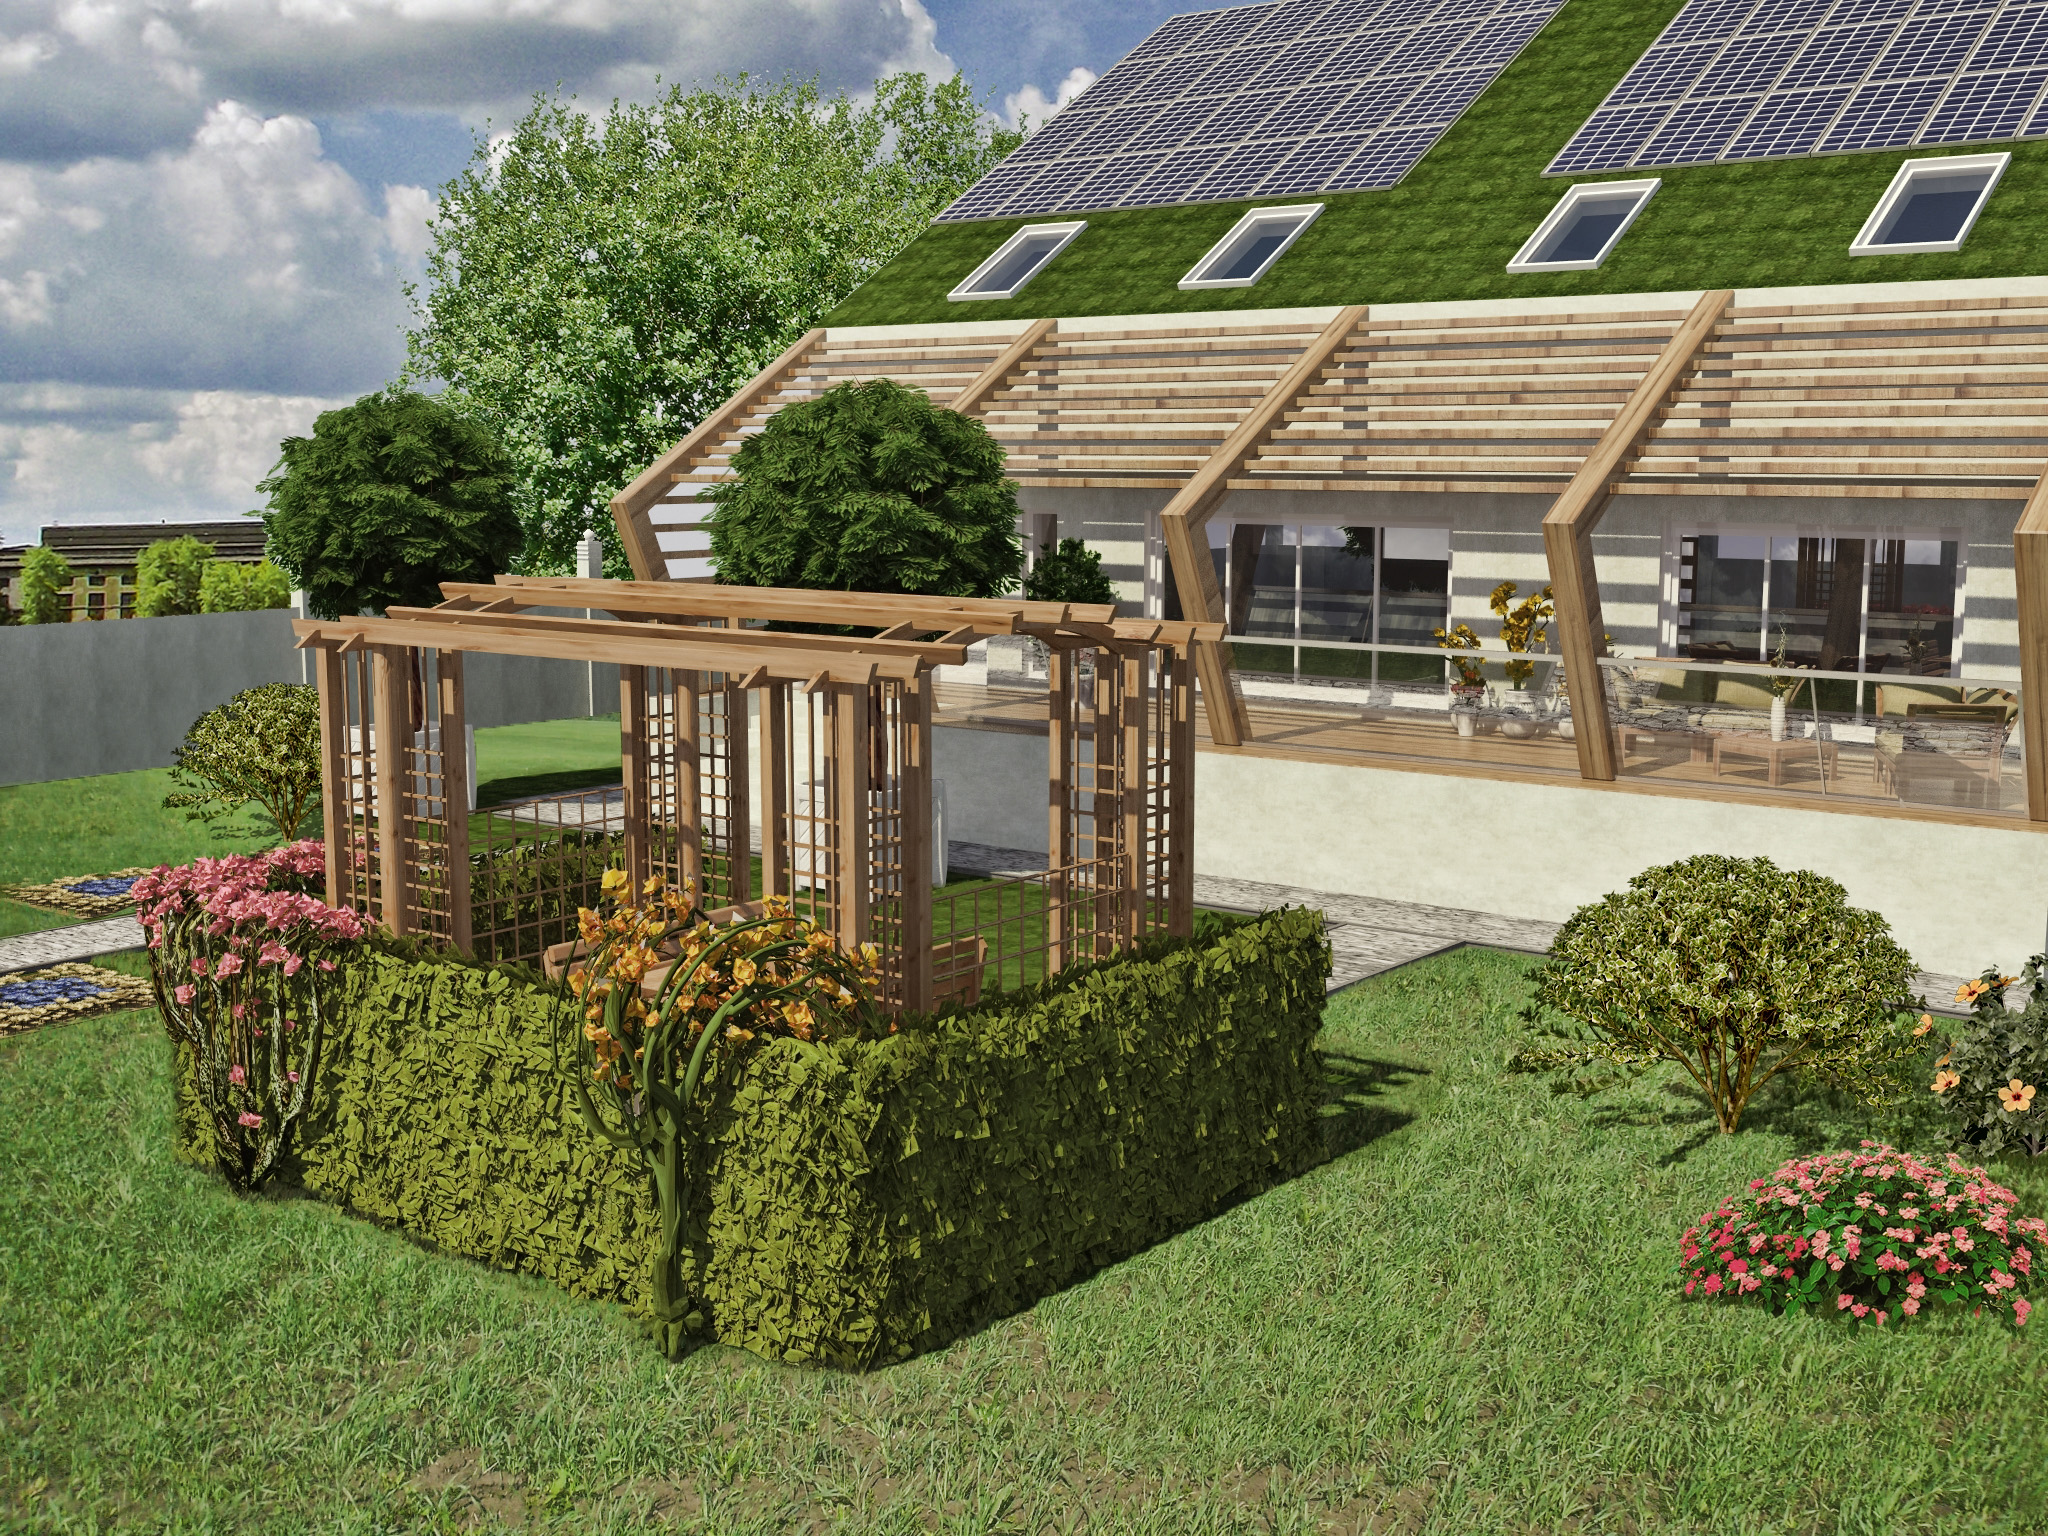 Дом с солнечными батареями